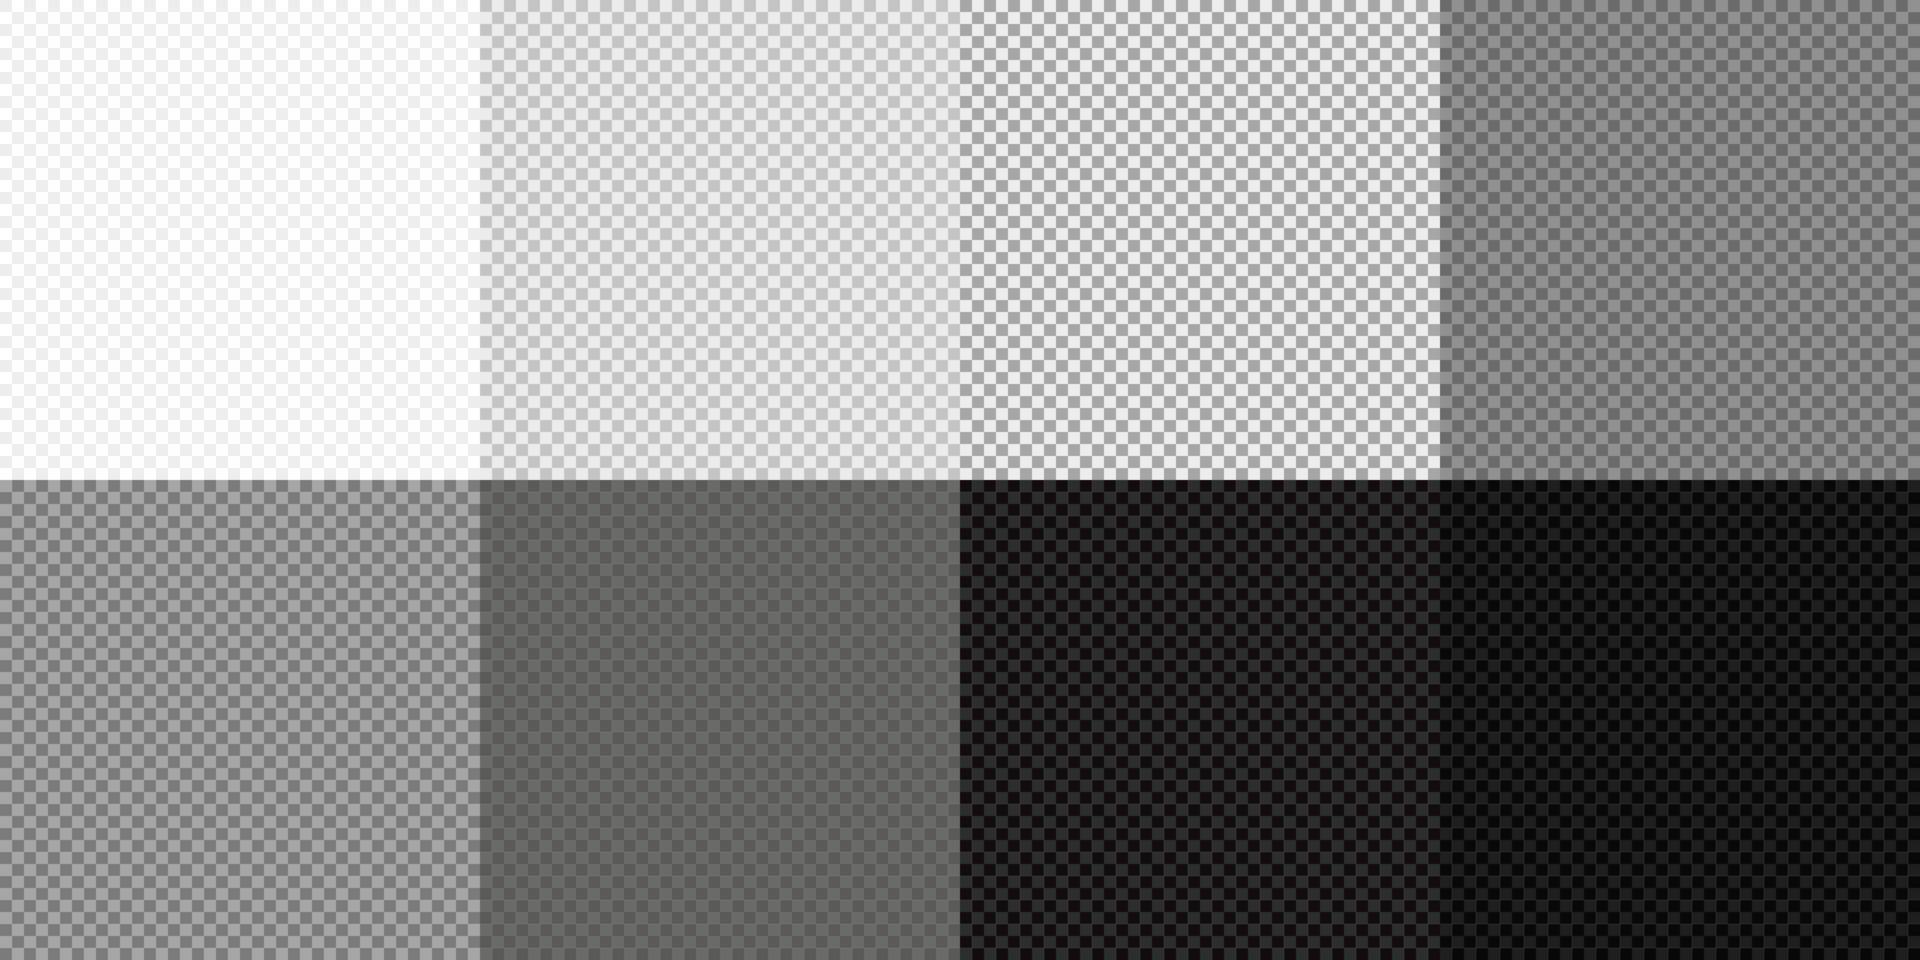 transparent bakgrundsuppsättning. vitt, grått, svart fyrkantigt genomskinligt mönster. transparent sömlös mosaik checker mall. rutnät bakgrund. abstrakt modern design. vektor illustration.